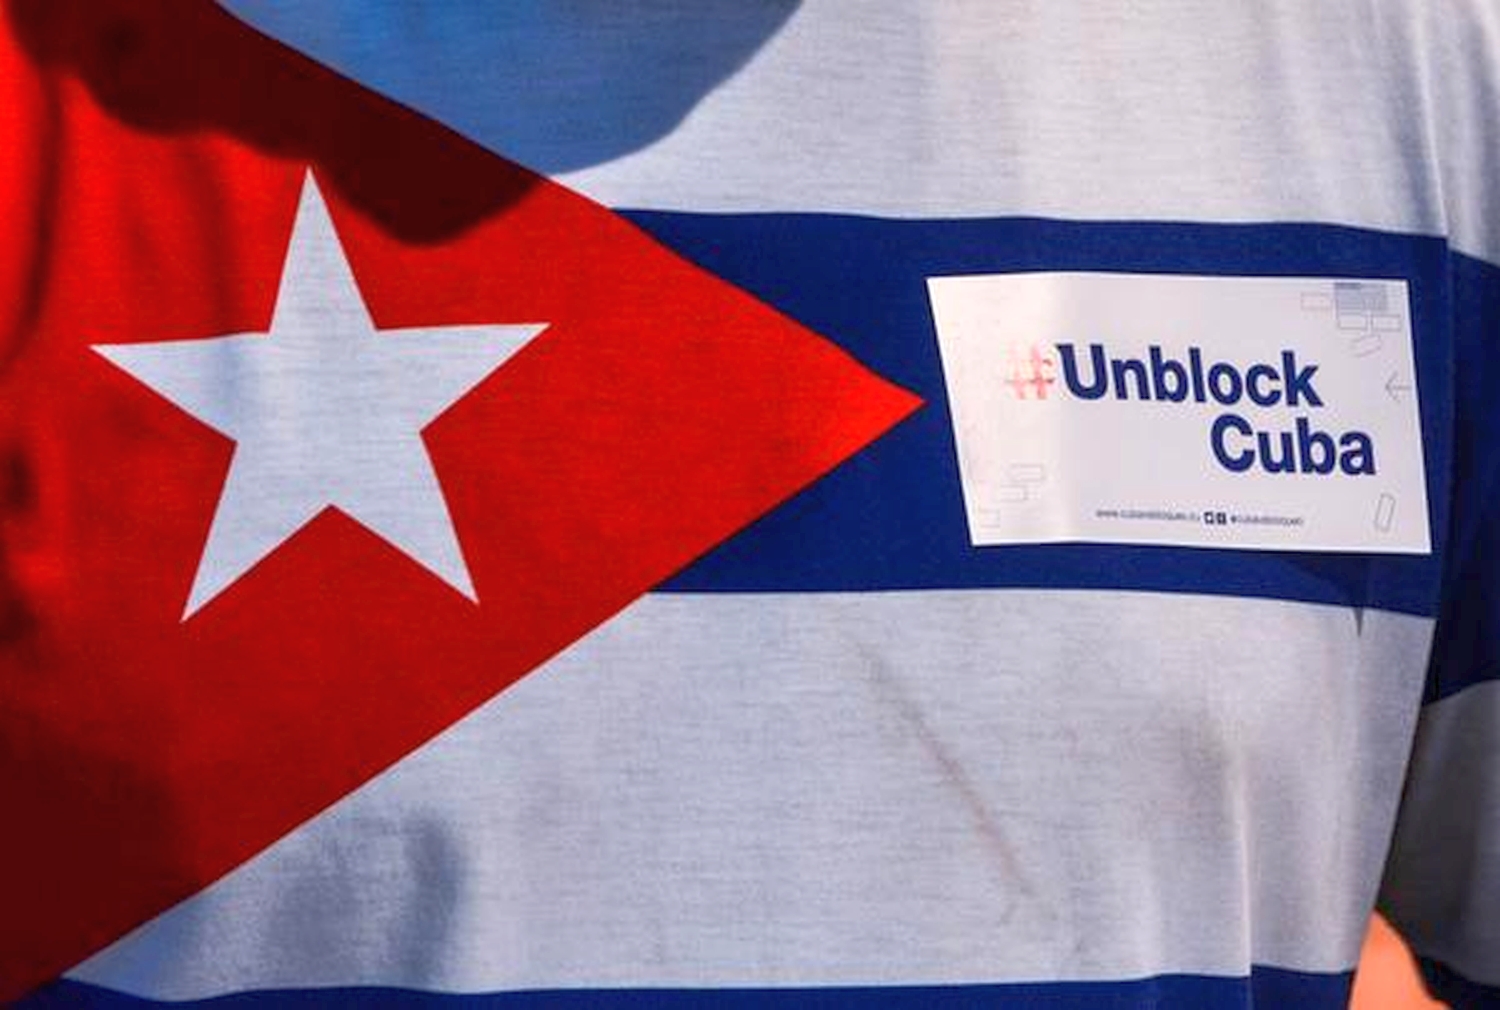 Unblock Cuba